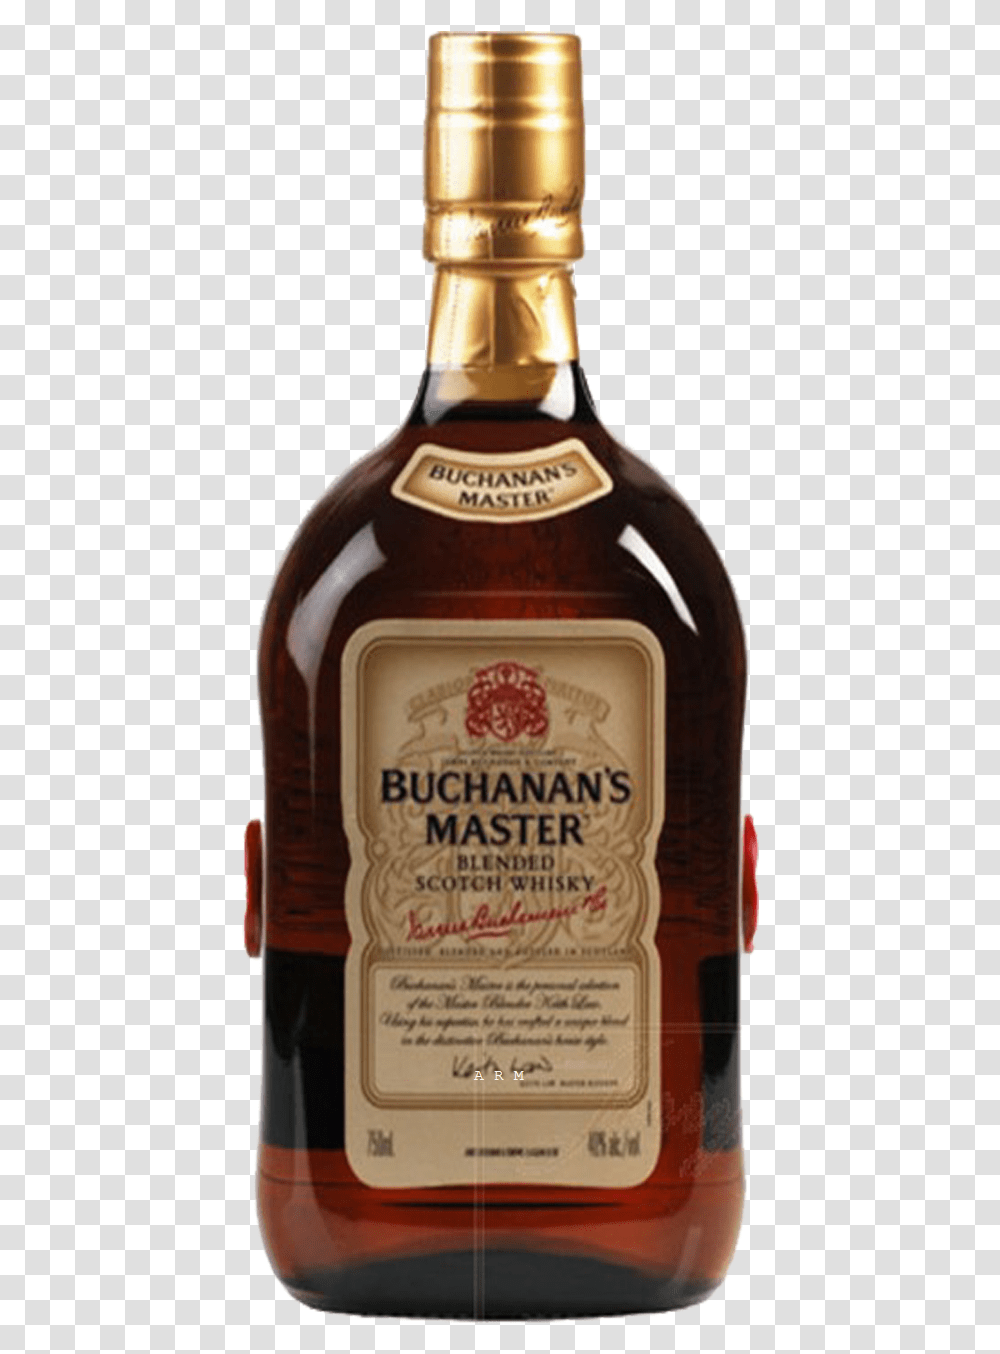 Buchanans Master, Liquor, Alcohol, Beverage, Drink Transparent Png